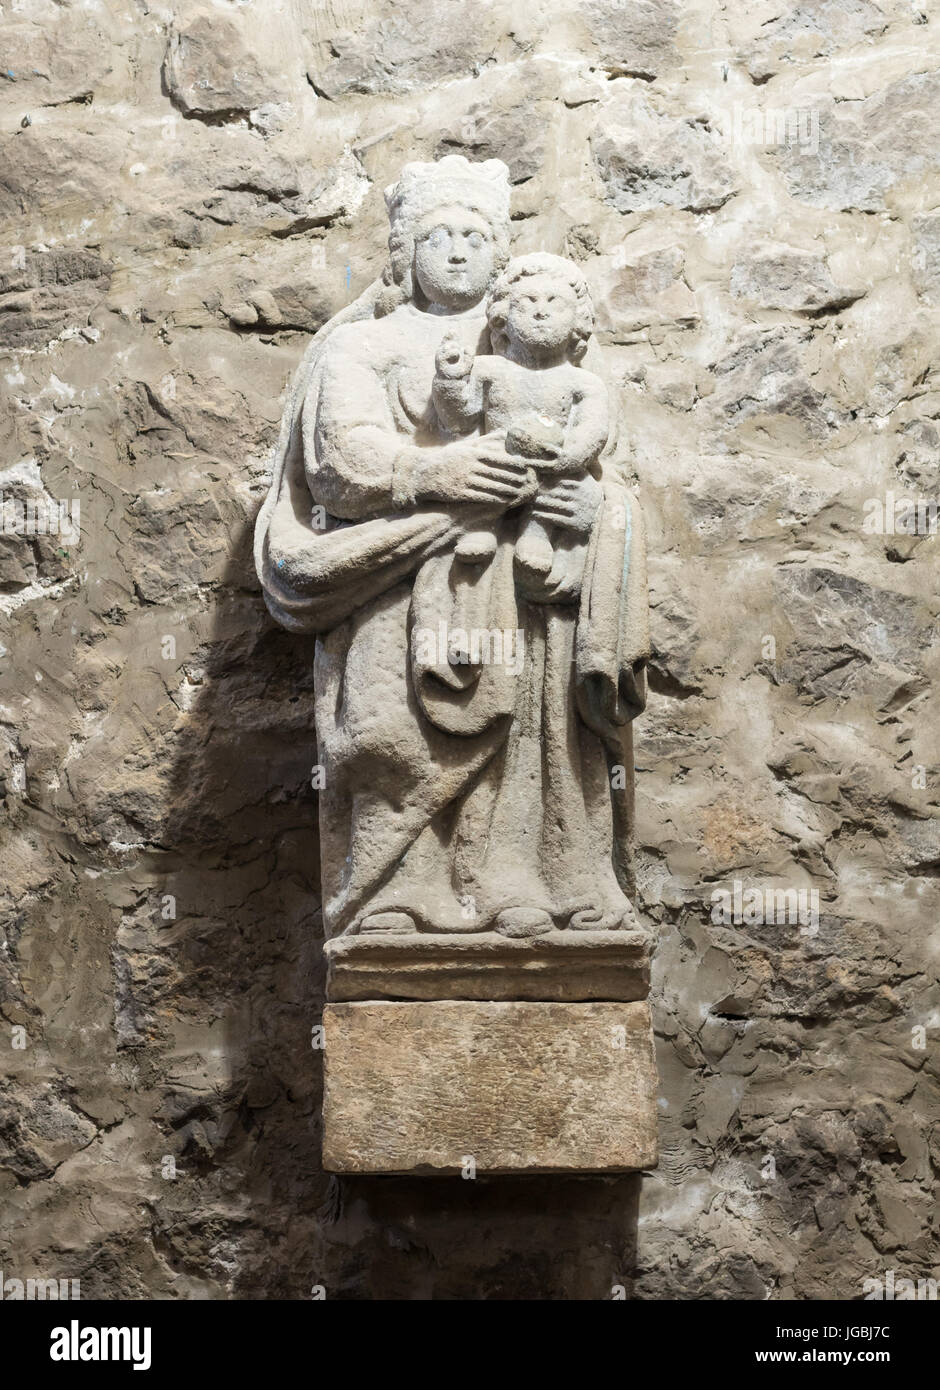 Medieval religious statuary within the Iglesia de Santa María de la Asunción, Laredo, Cantabria, Spain Stock Photo